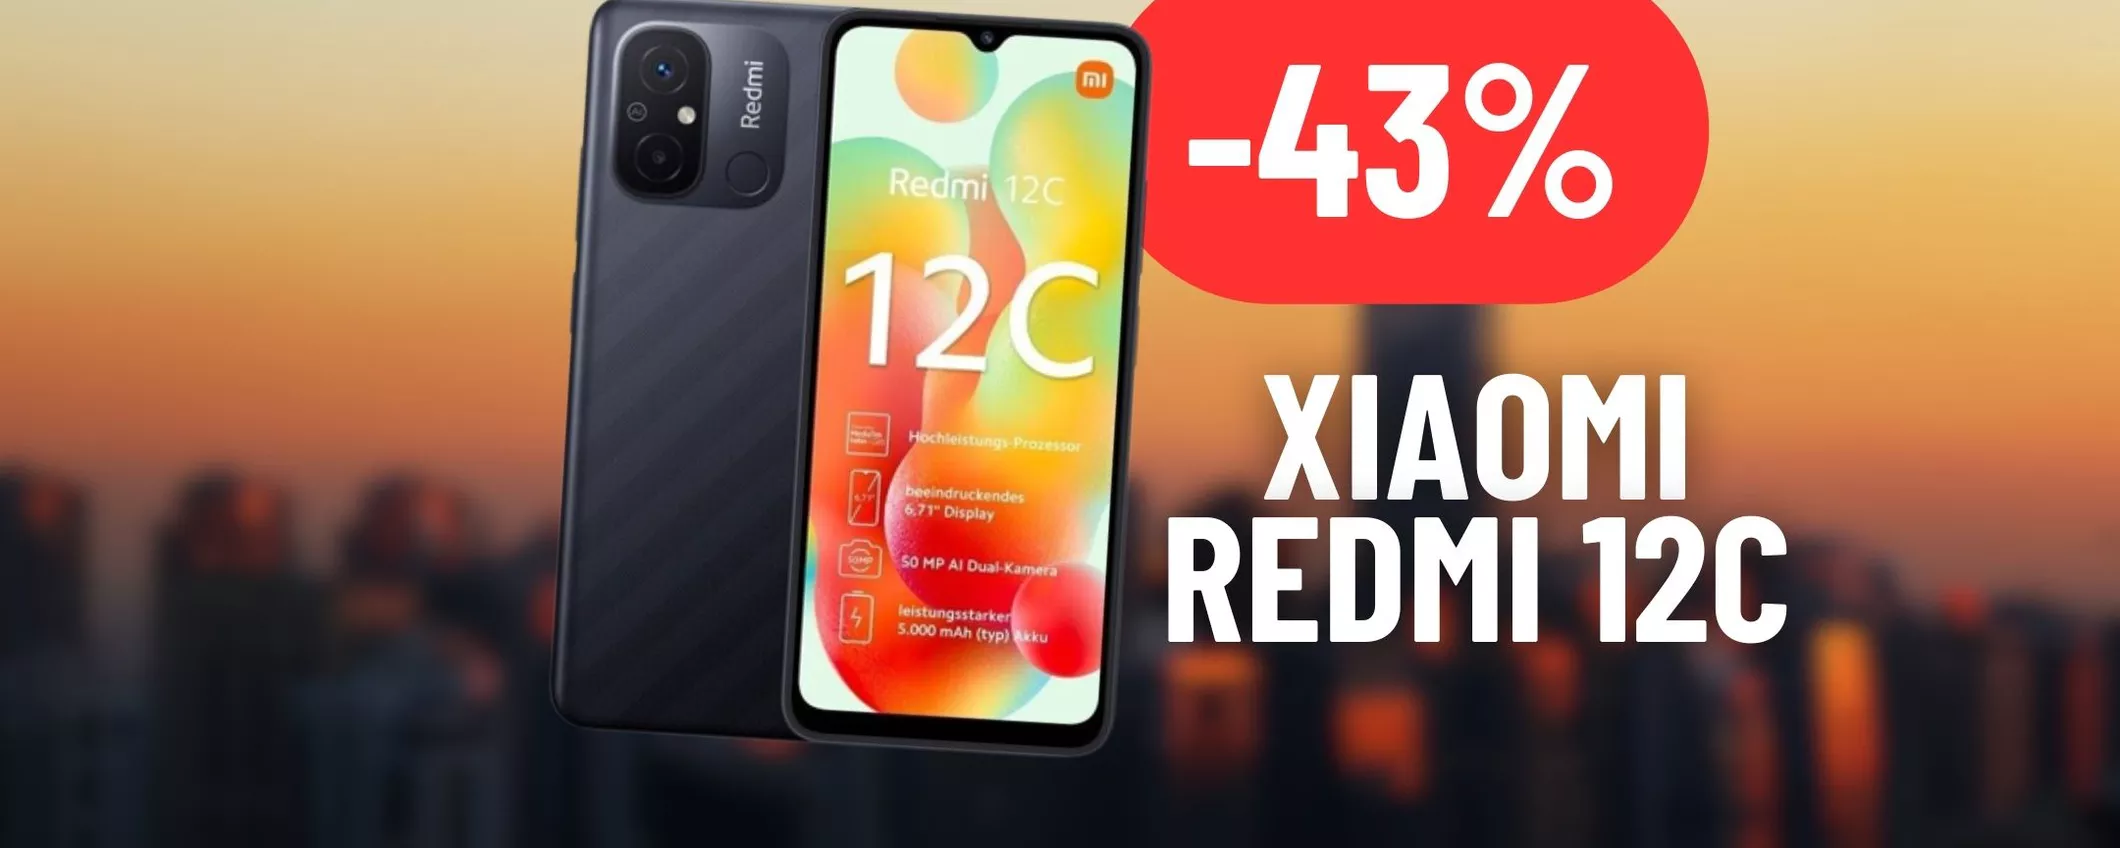 Xiaomi Redmi 12C: prezzo disintegrato con lo sconto su Amazon